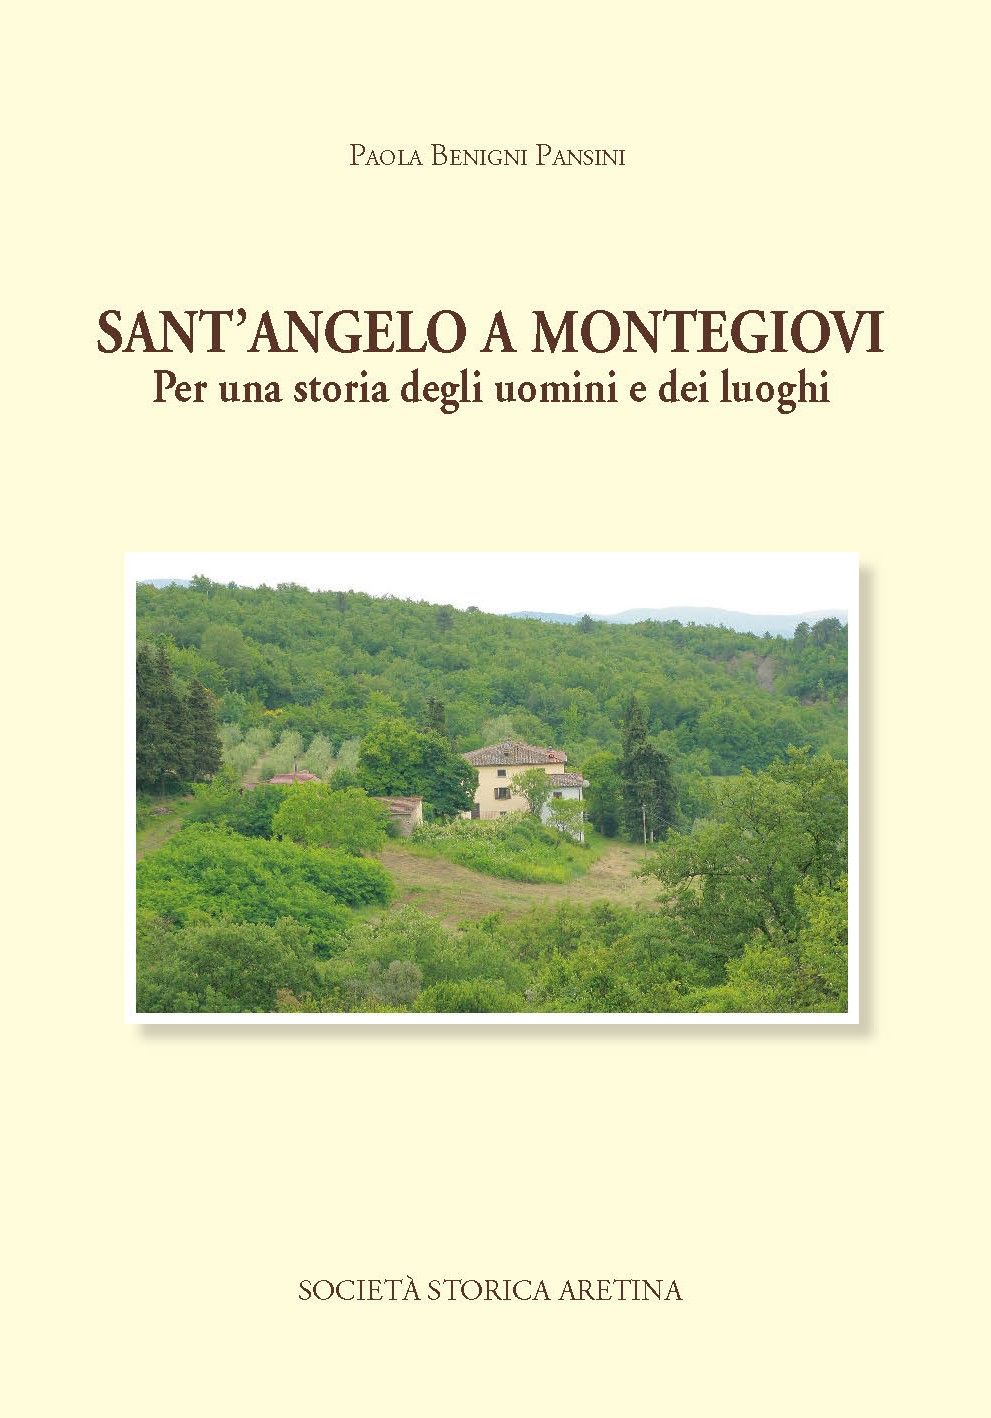 Presentazione del libro “Sant’Angelo a Montegiovi”